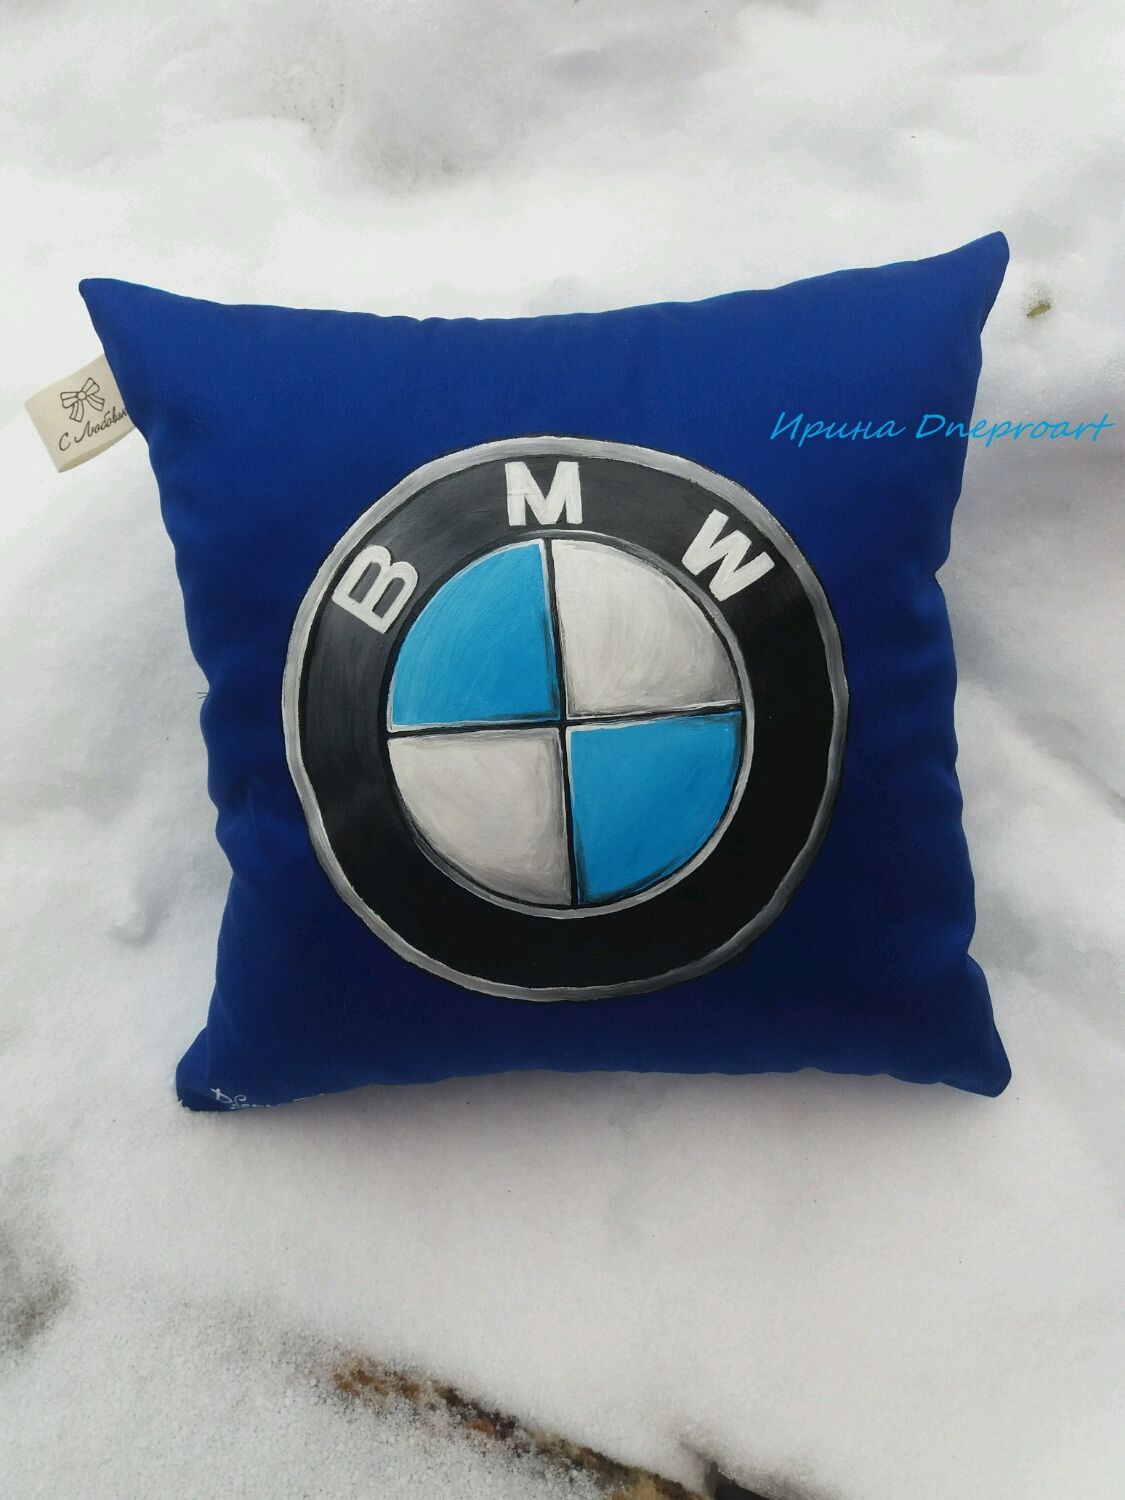 Купить подушки бмв. Подушка с логотипом BMW. Подушка БМВ В машину. Декоративные подушки с изображением автомобиля. Подушка БМВ круглая.